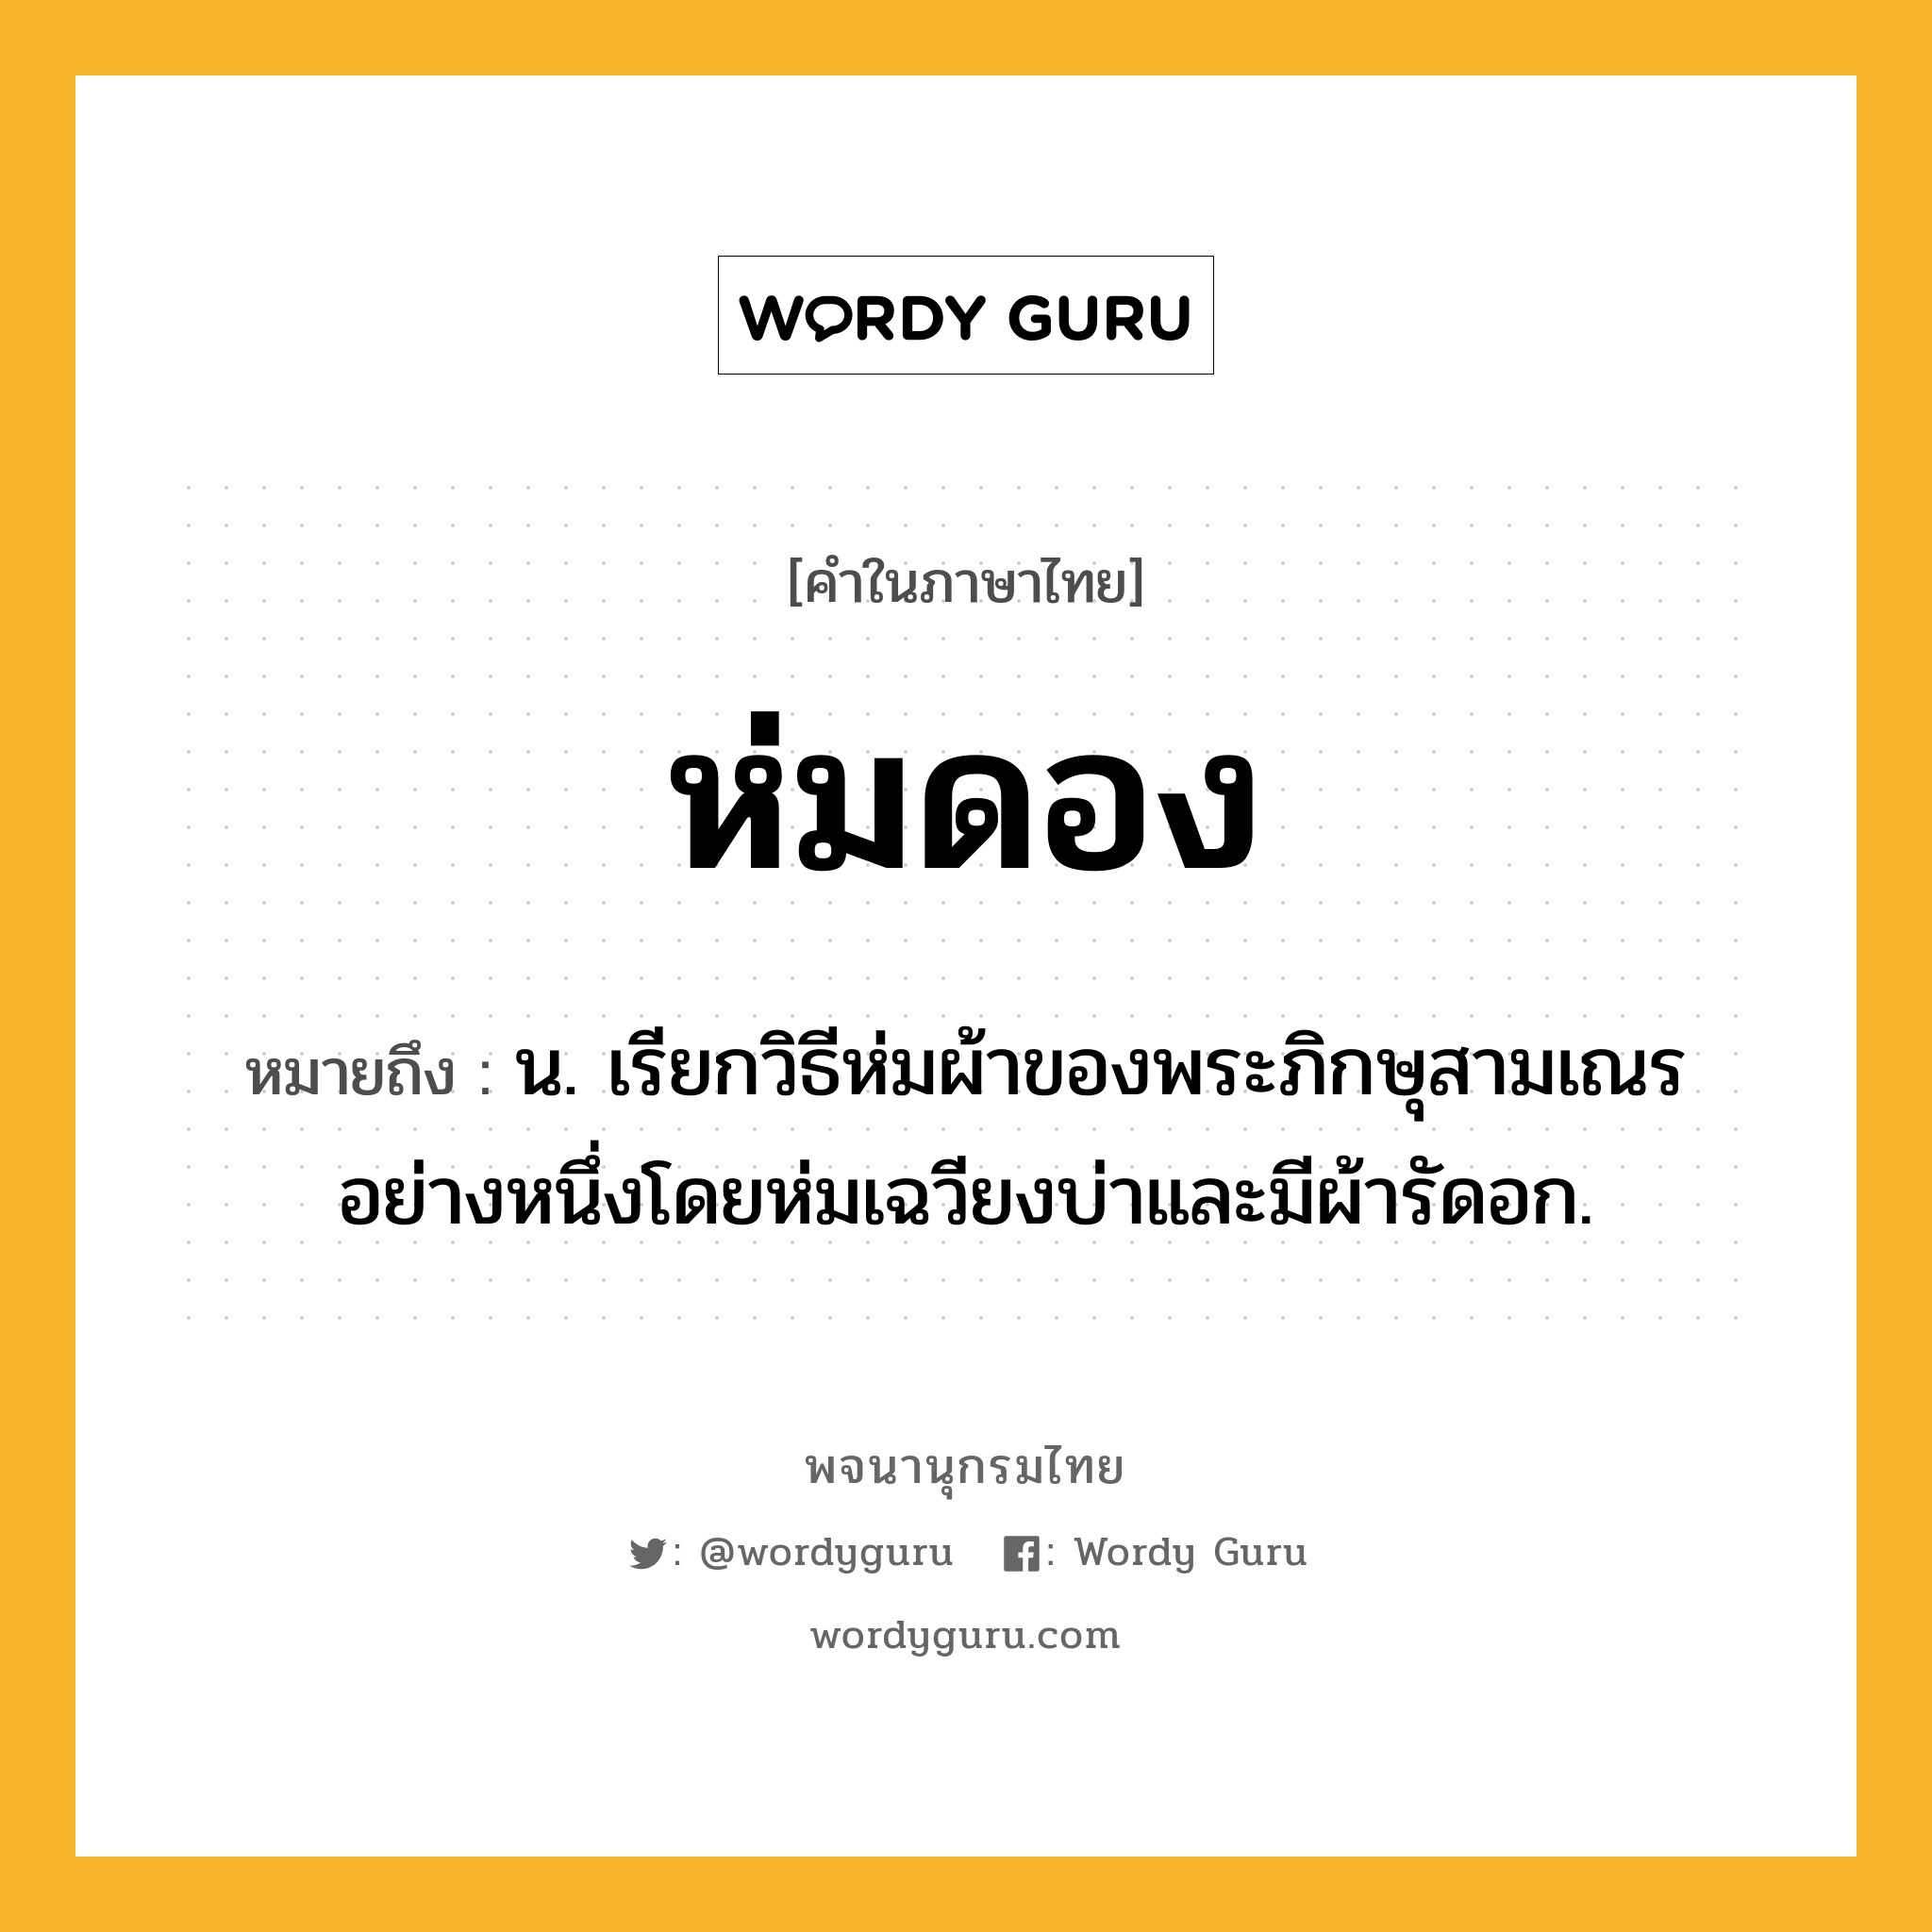 ห่มดอง หมายถึงอะไร?, คำในภาษาไทย ห่มดอง หมายถึง น. เรียกวิธีห่มผ้าของพระภิกษุสามเณรอย่างหนึ่งโดยห่มเฉวียงบ่าและมีผ้ารัดอก.